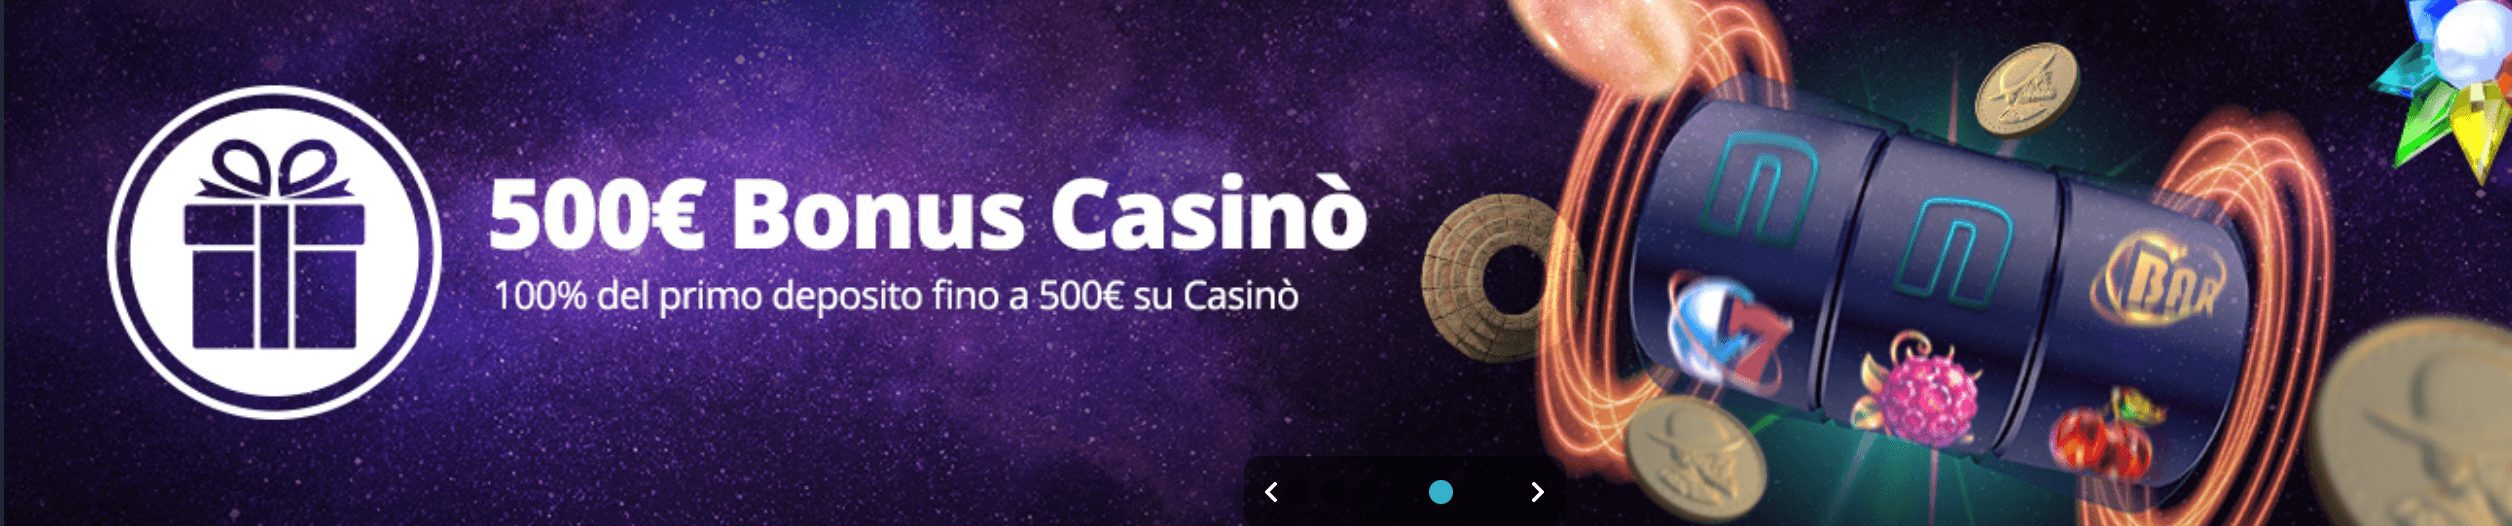 Novibet Casino Bonus Benvenuto